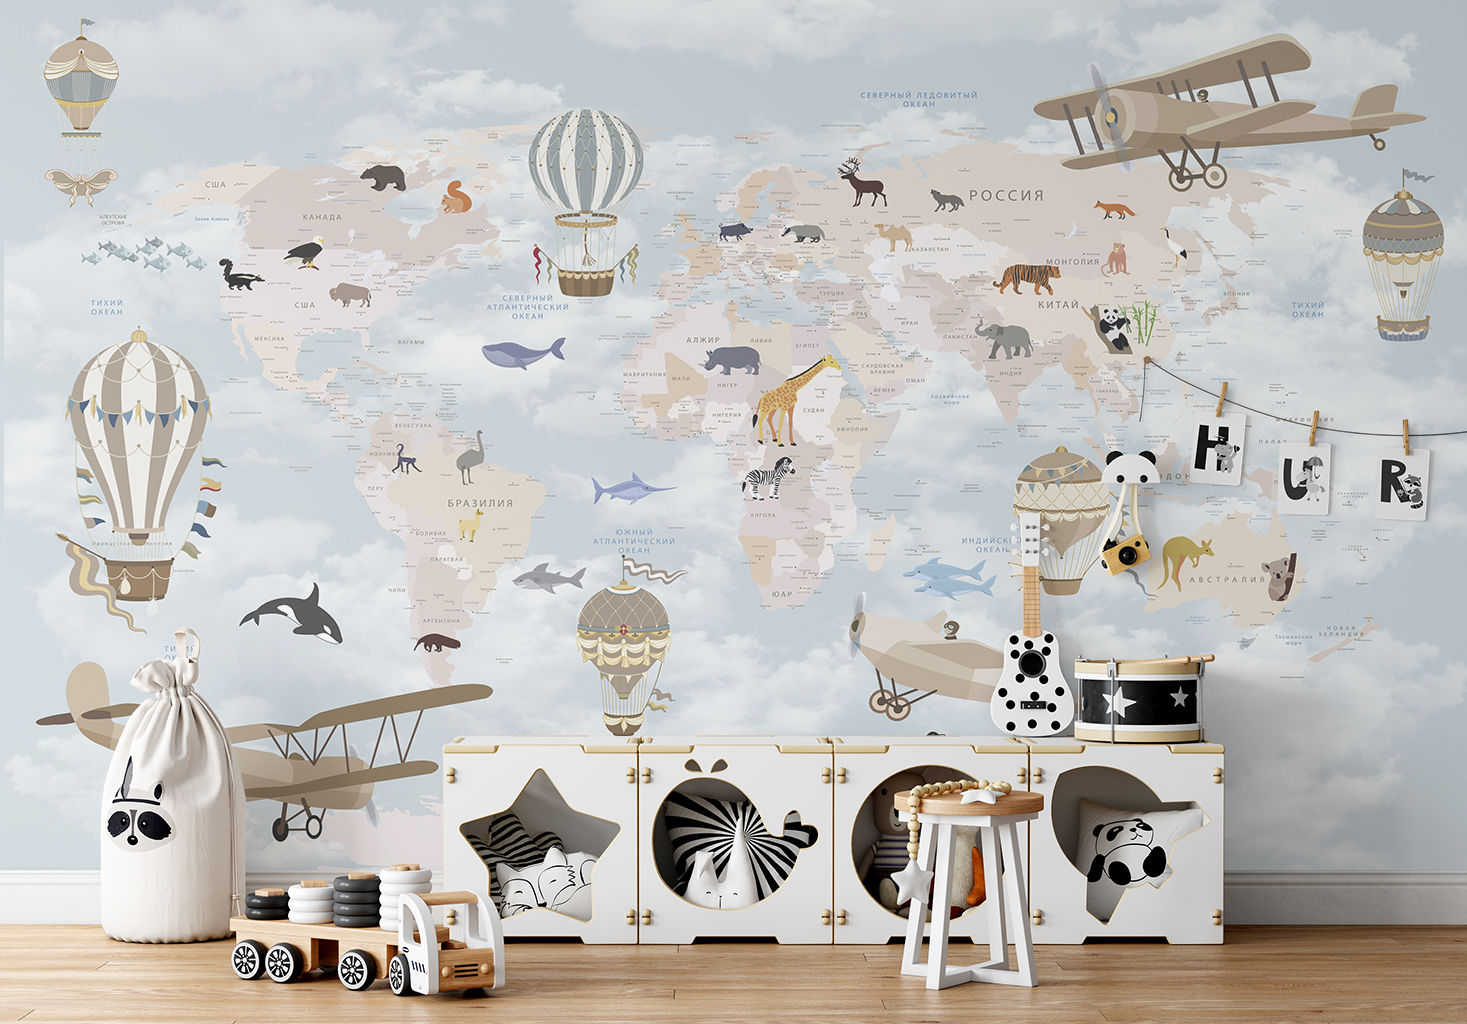 Фотообои Photostena Карта мира на русском с животными 4,5 x 2,7 м подарочная карта аквафор 1000р